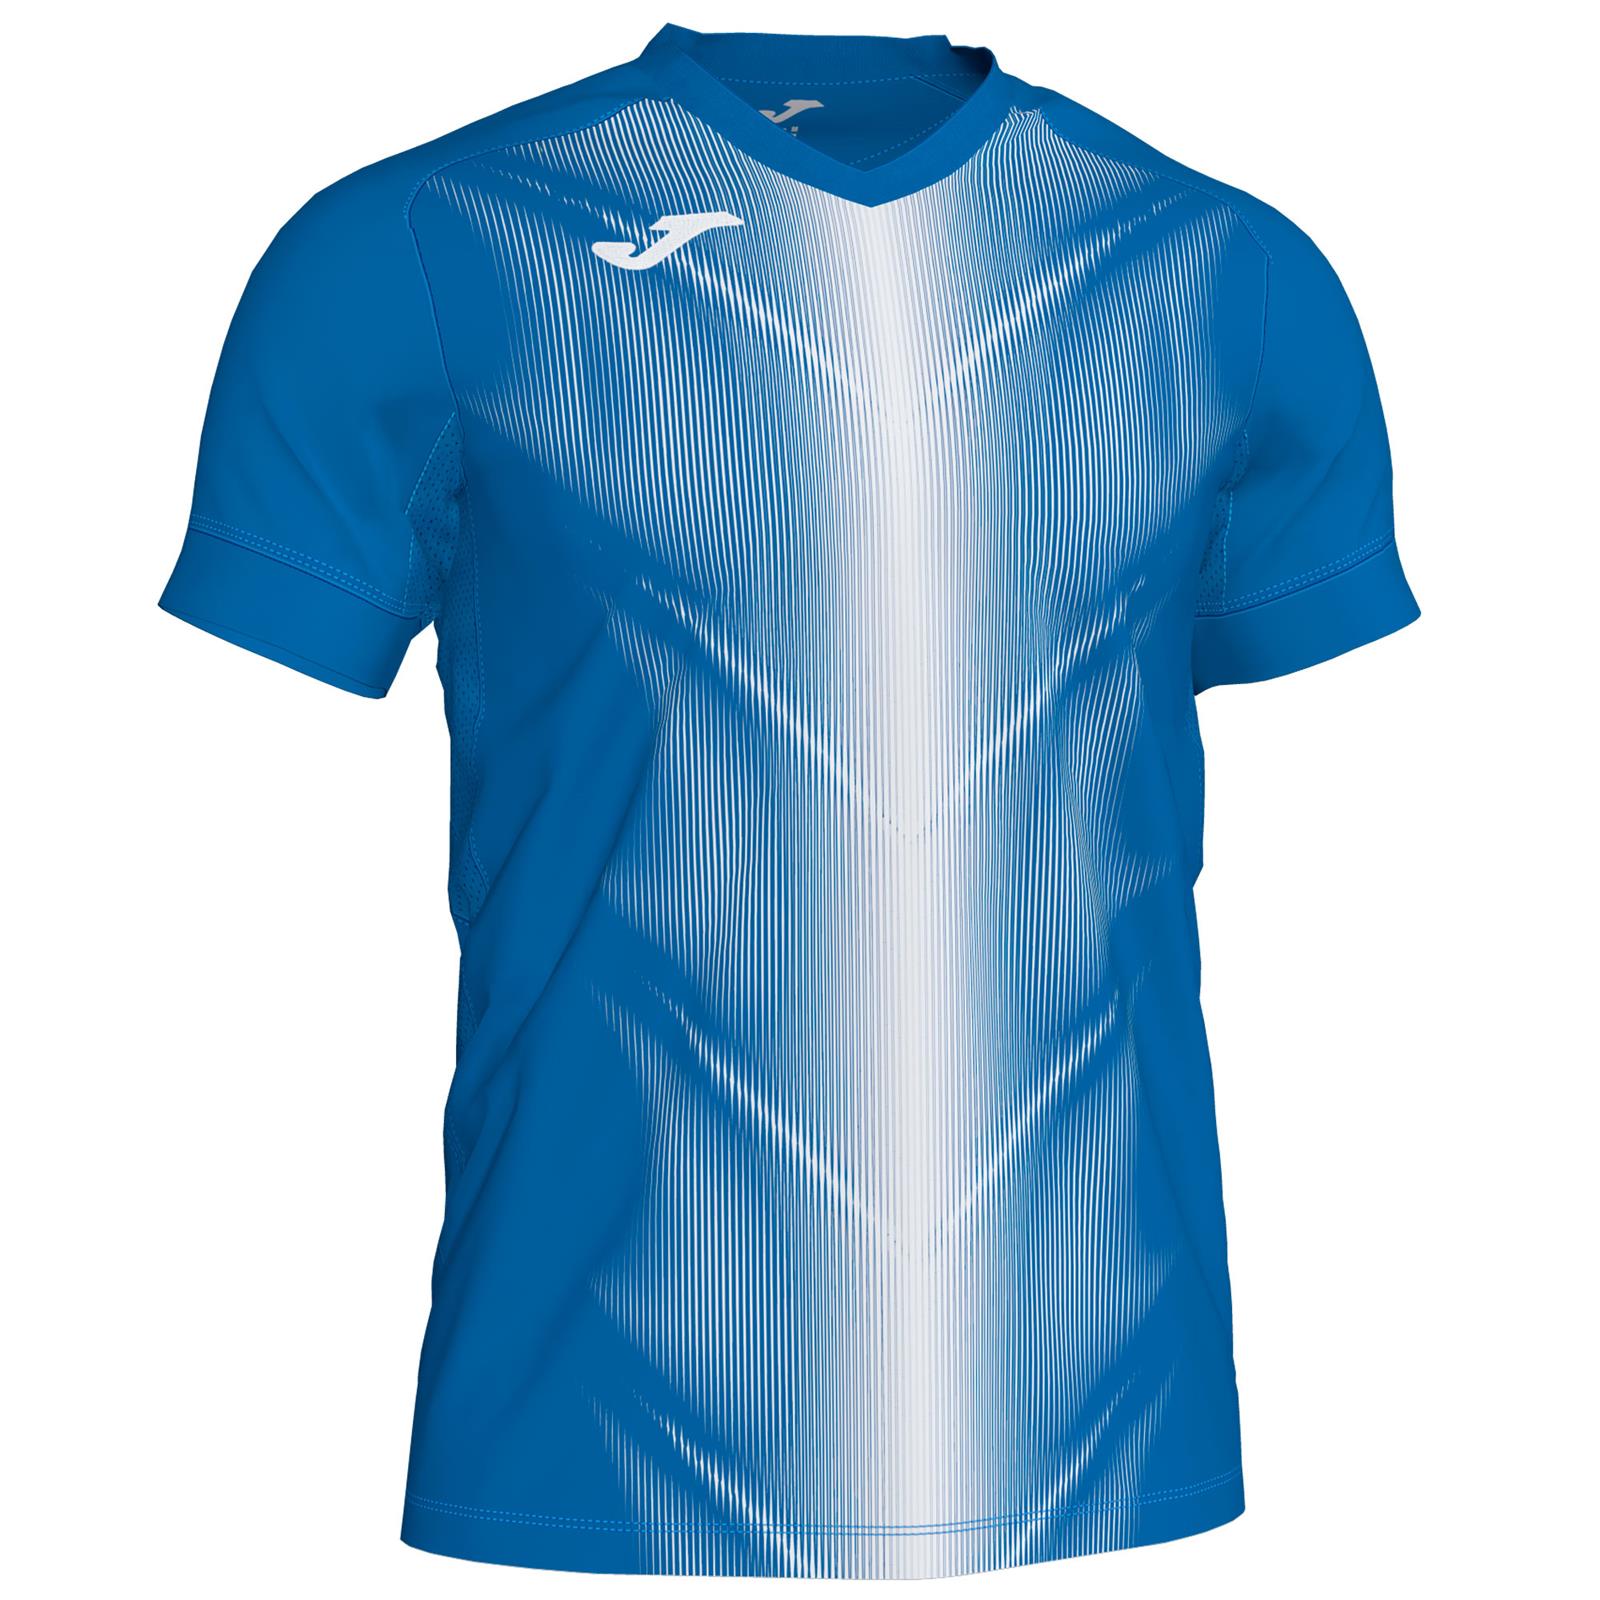 JOMA T-shirt Olimpia m/c (XL - ROYAL - BIANCO)